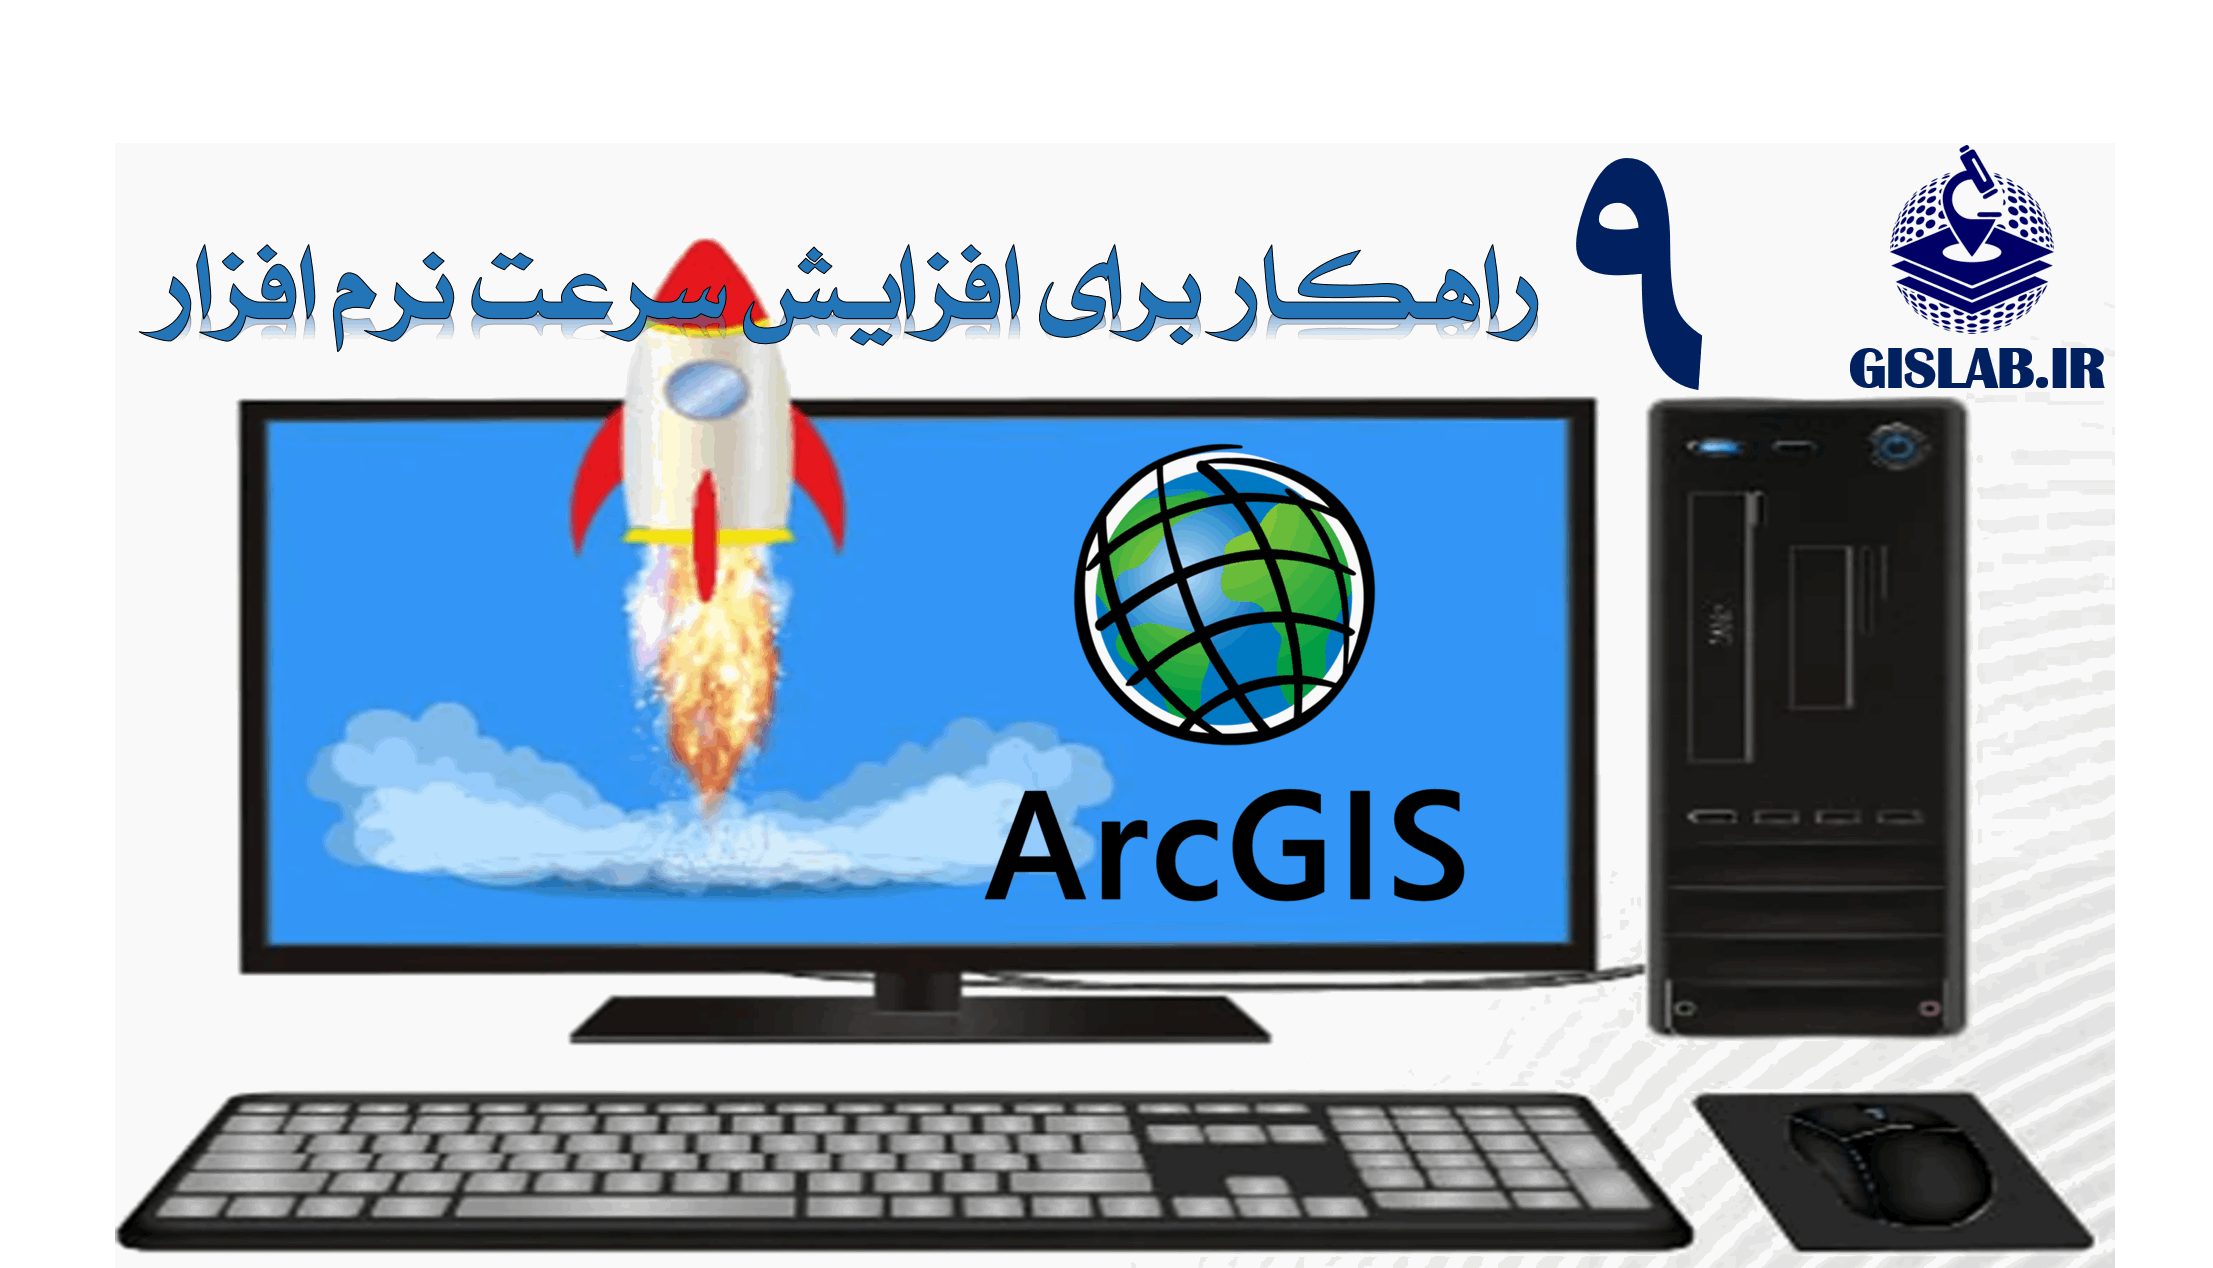 9 راهکاربرای افزایش سرعت نرم افزار ArcGIS